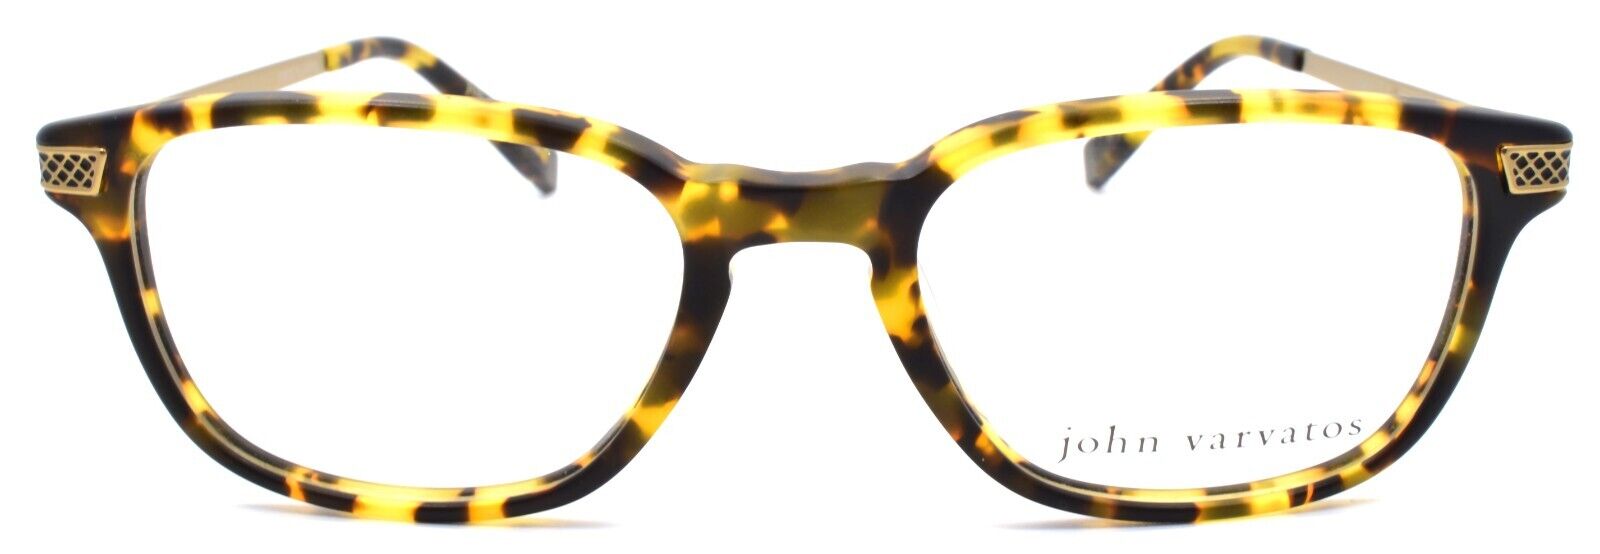 2-John Varvatos V348 UF Men's Eyeglasses Frames 49-18-140 Tokyo Tortoise Japan-751286251531-IKSpecs